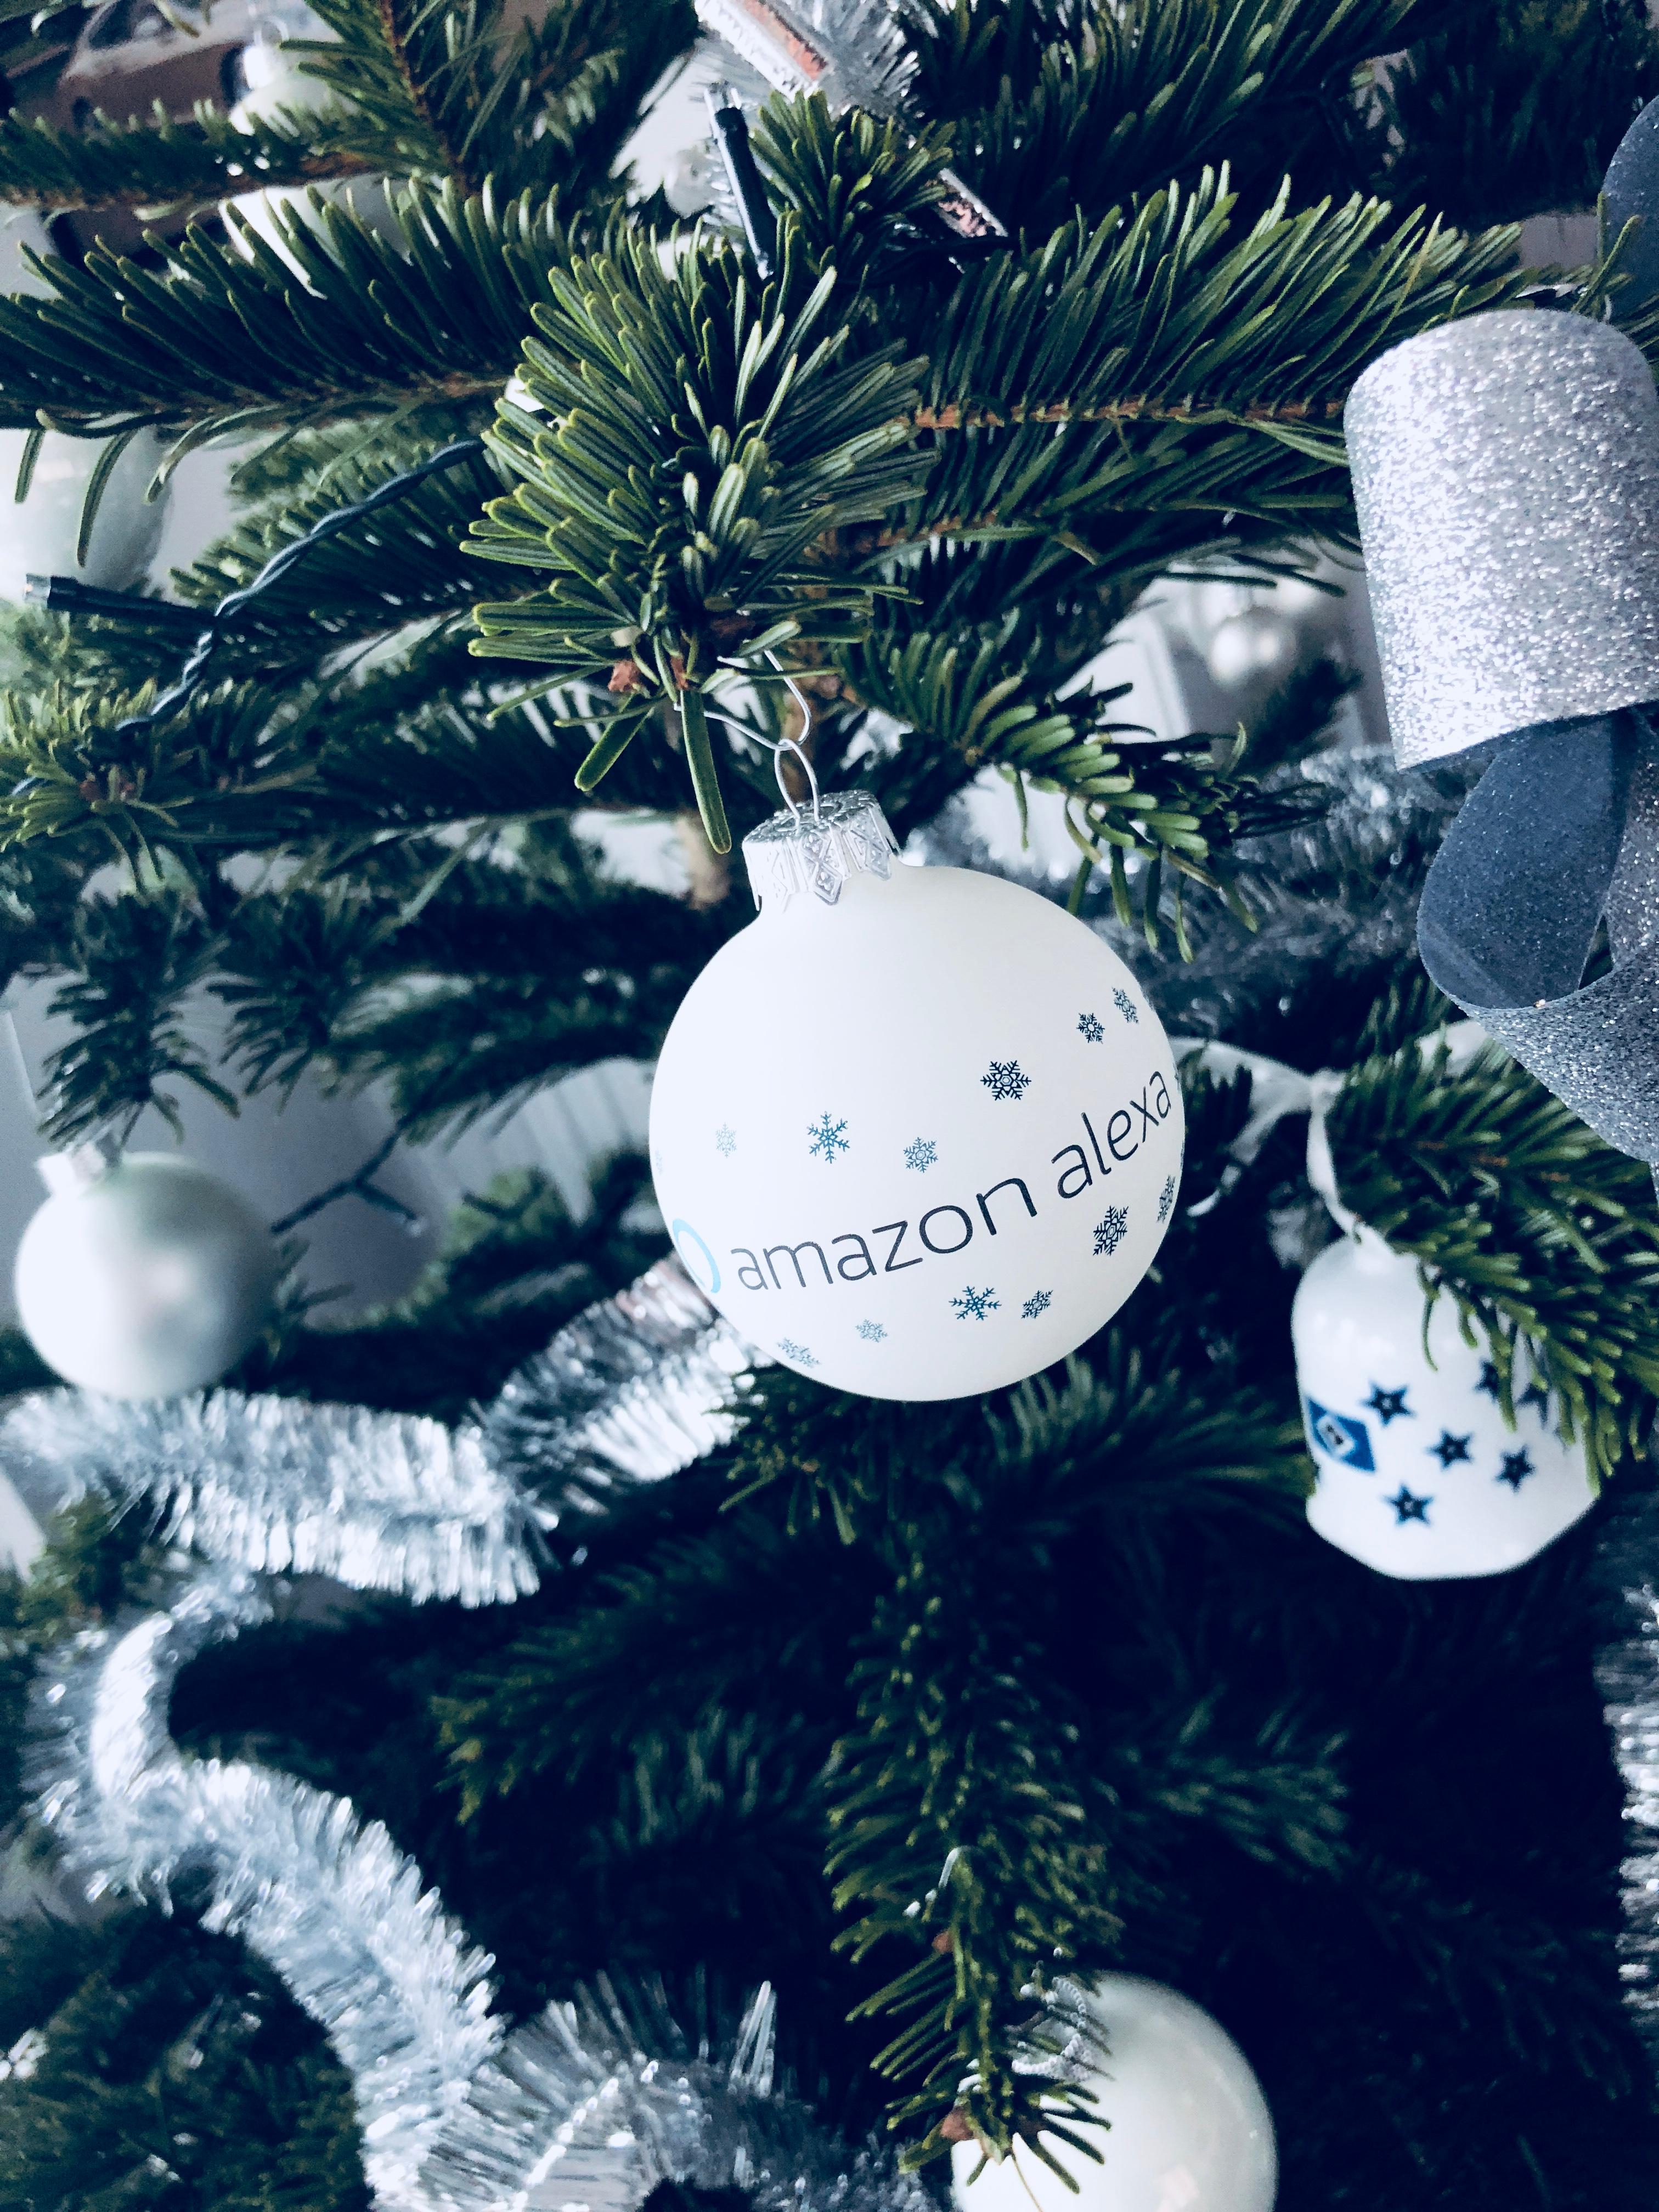 Der smarte #Tannenbaum mit #Alexa und #PhilipsHue #sprachgesteuert #xmasdeko #weihnachtskugeln #christbaumkugeln